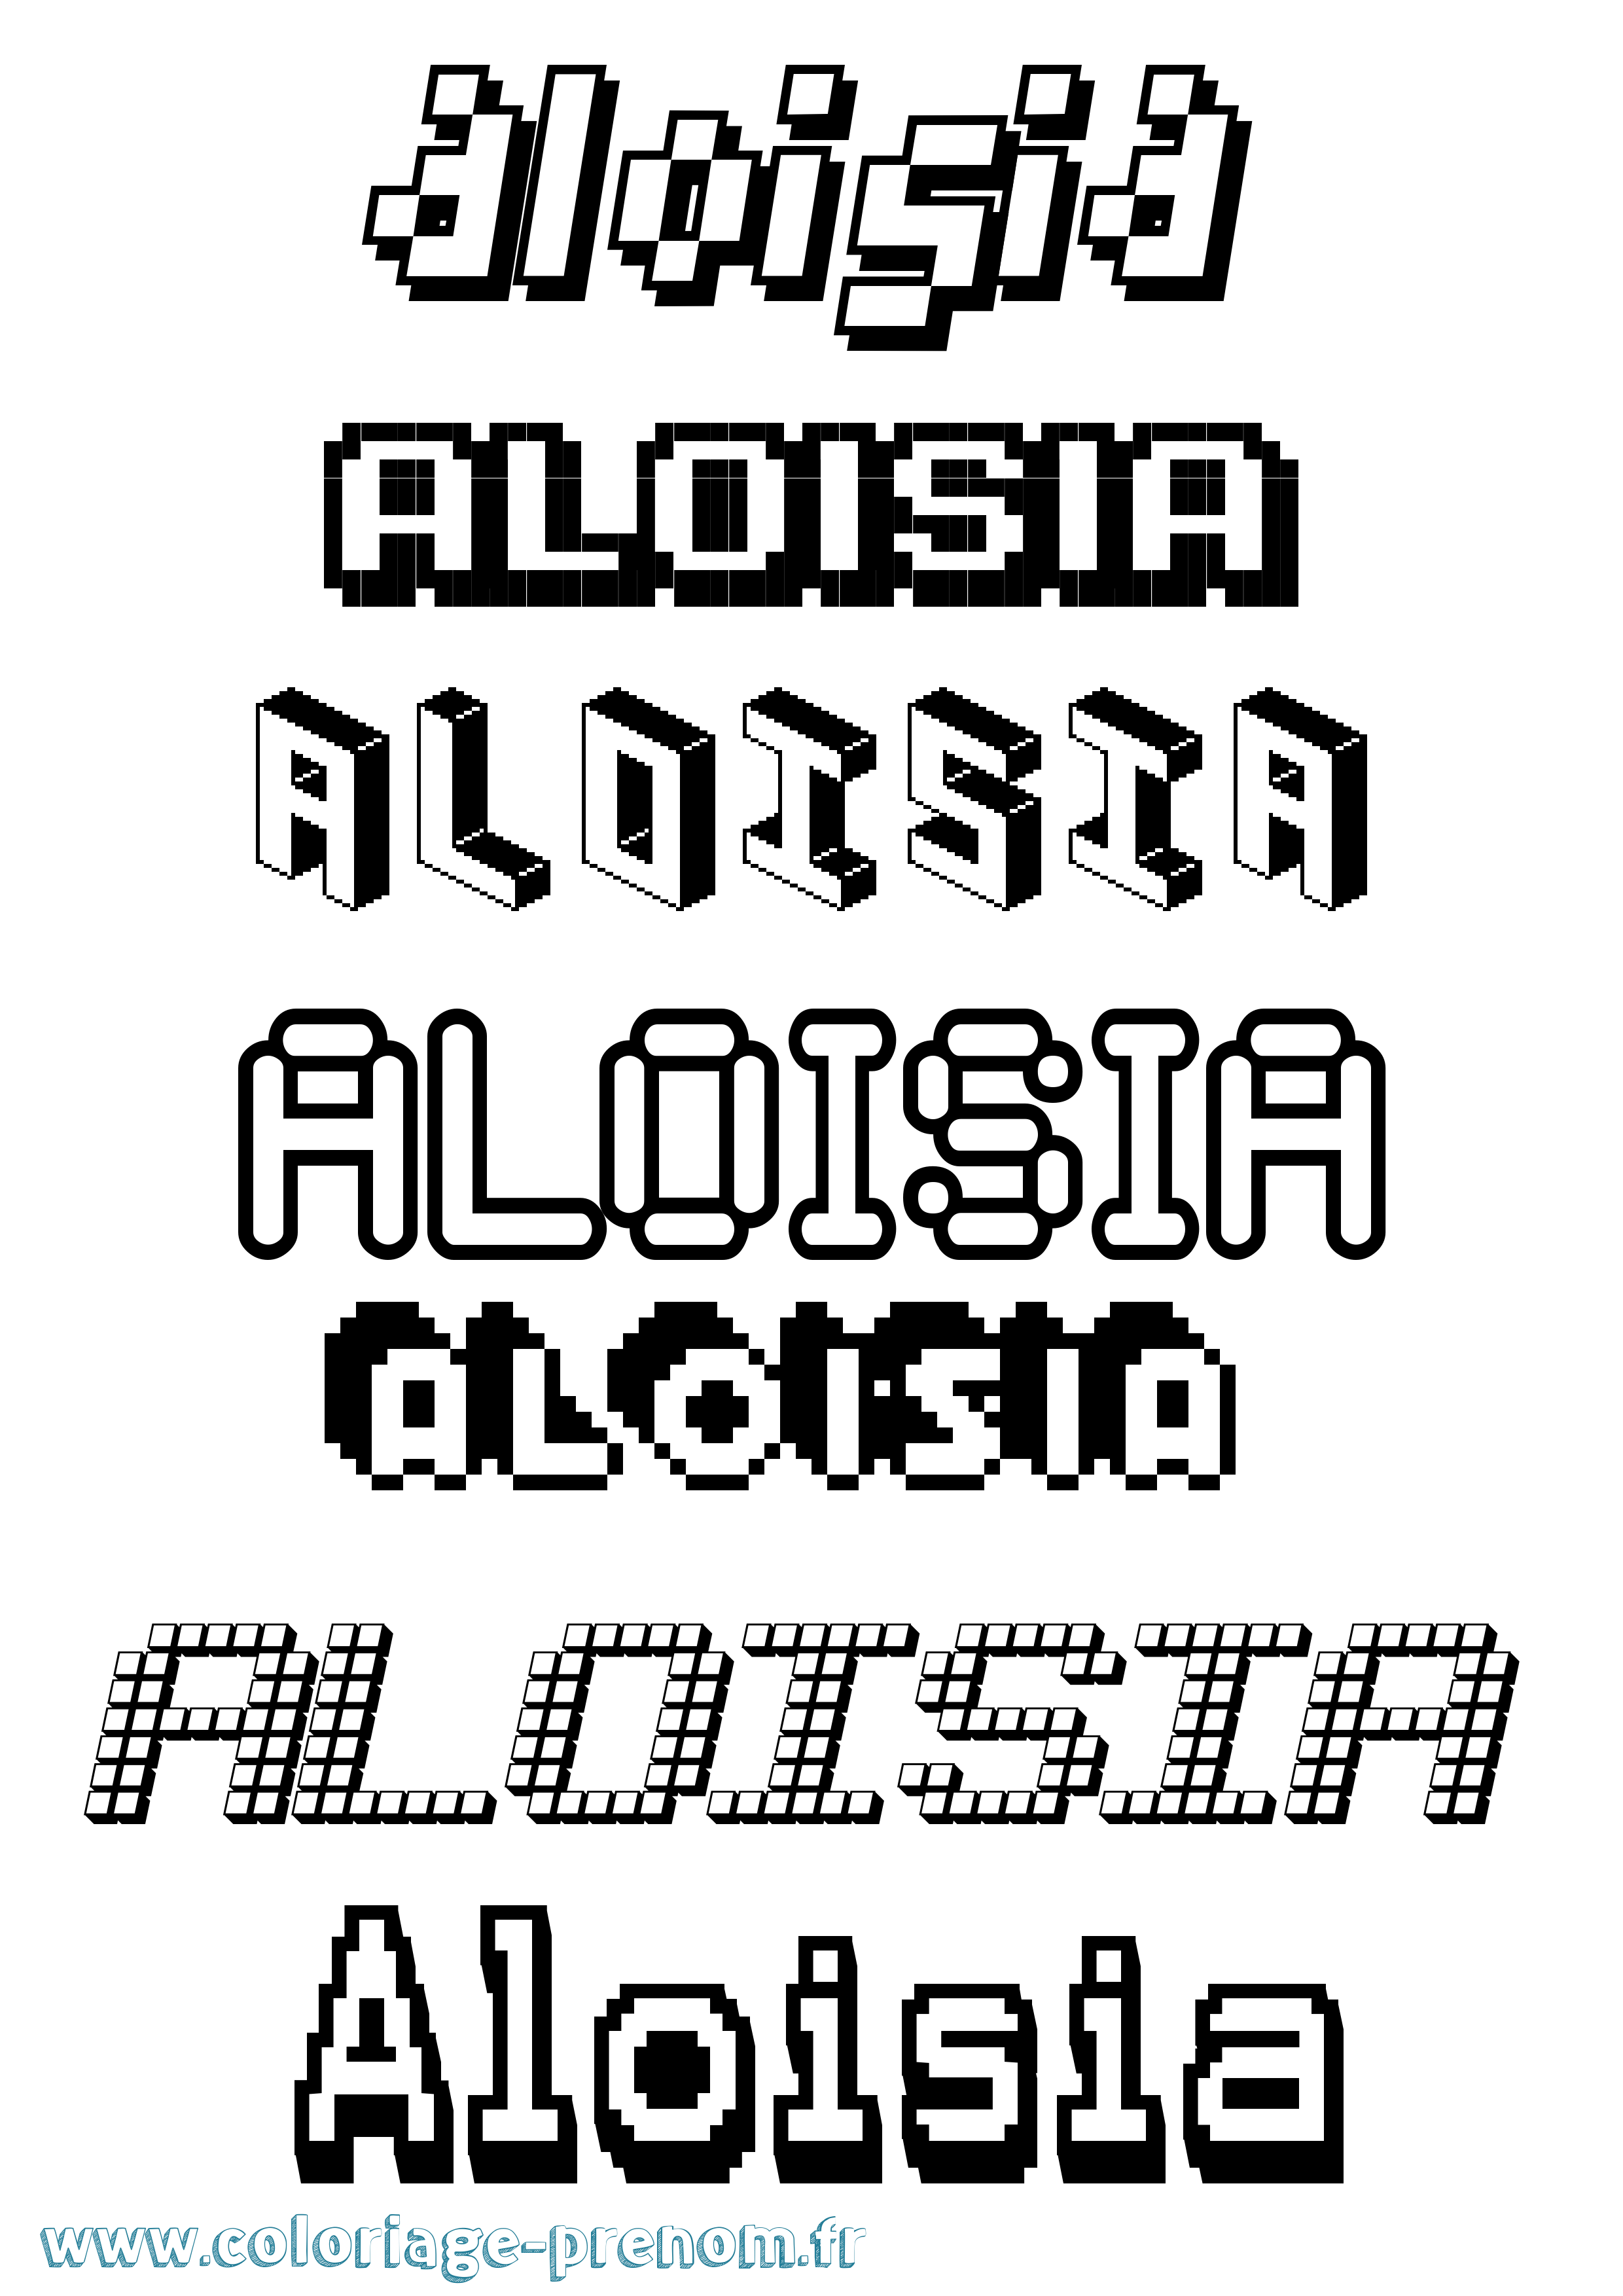 Coloriage prénom Aloisia Pixel